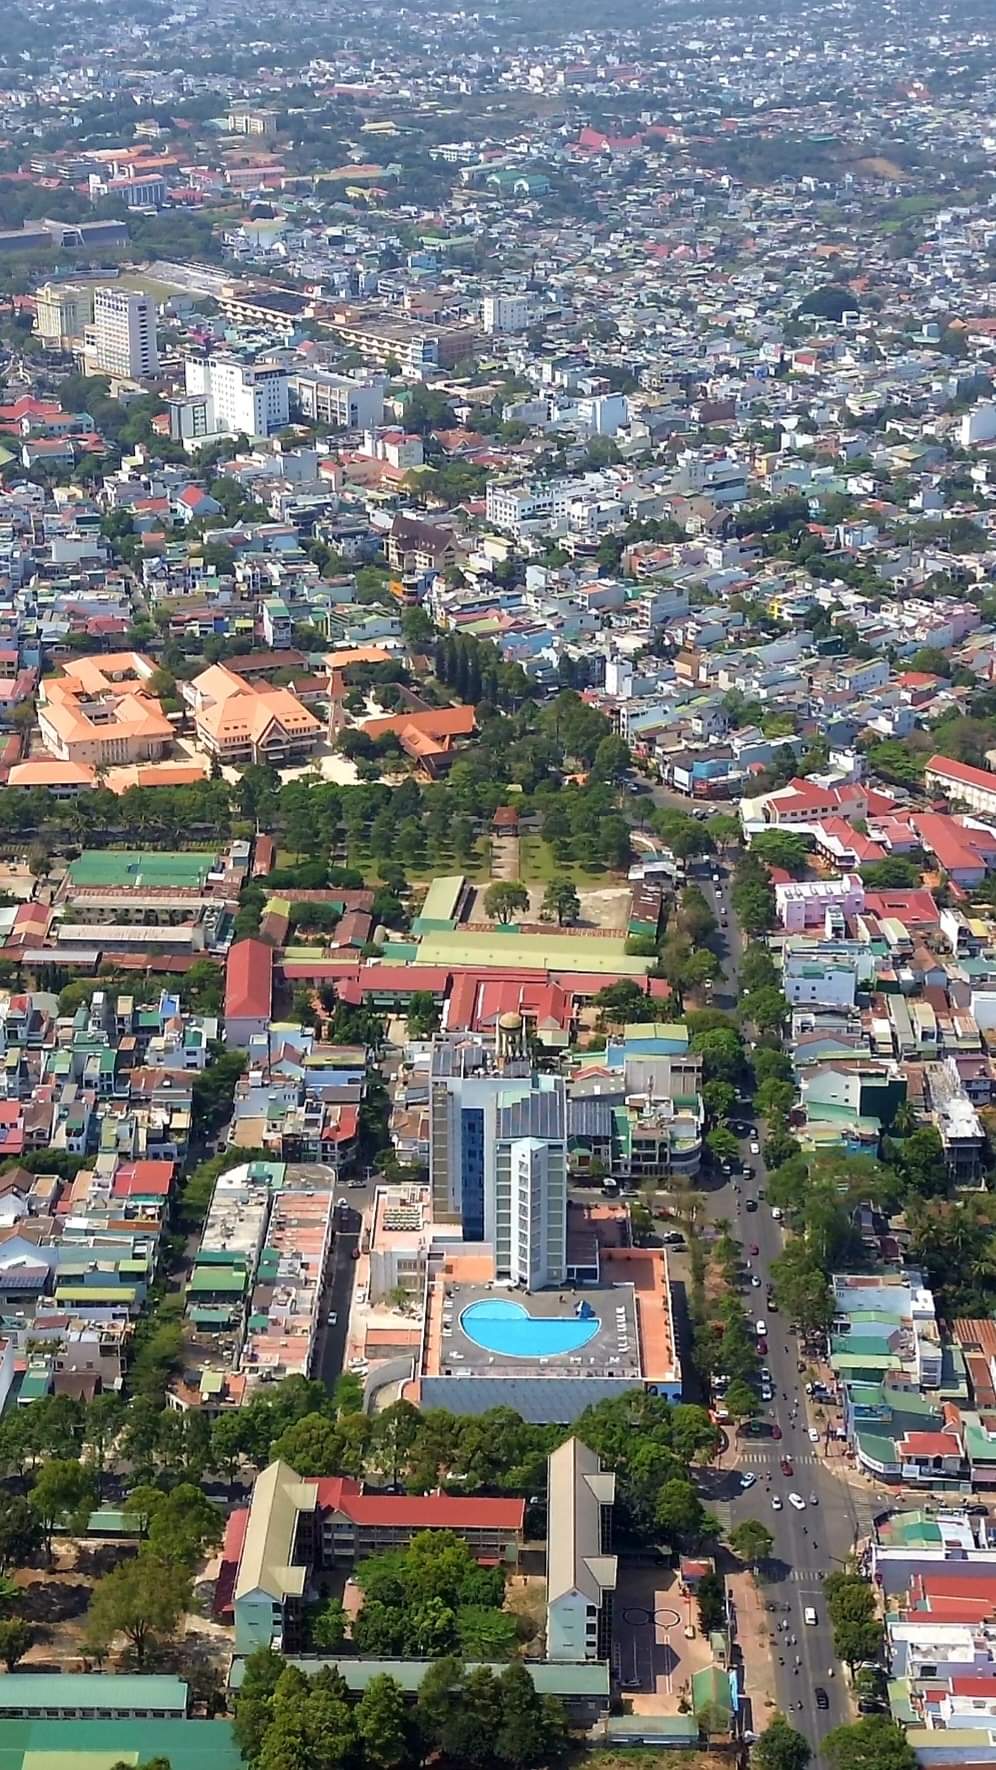 Một góc nhỏ thành phố Buôn Ma Thuột, một trong 10 thành phố xanh - sạch - đẹp của cả nước.